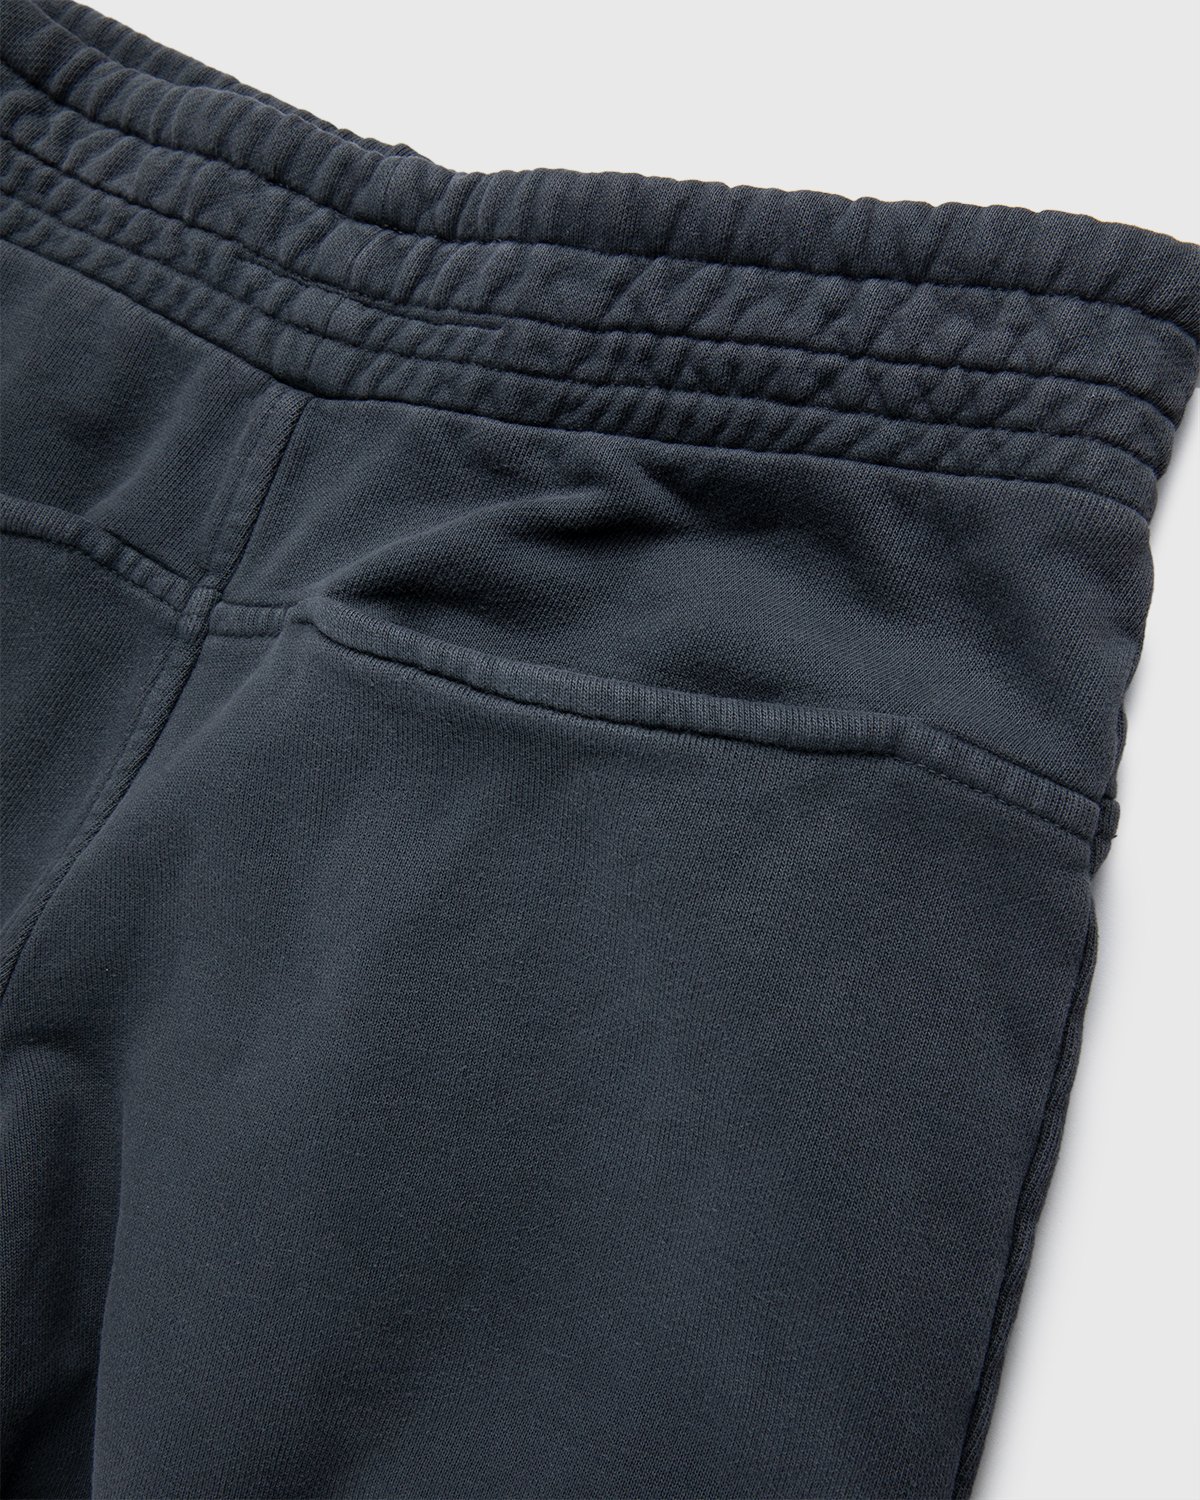 Darryl Brown - Gym Pants Vintage Black - Clothing - Black - Image 4